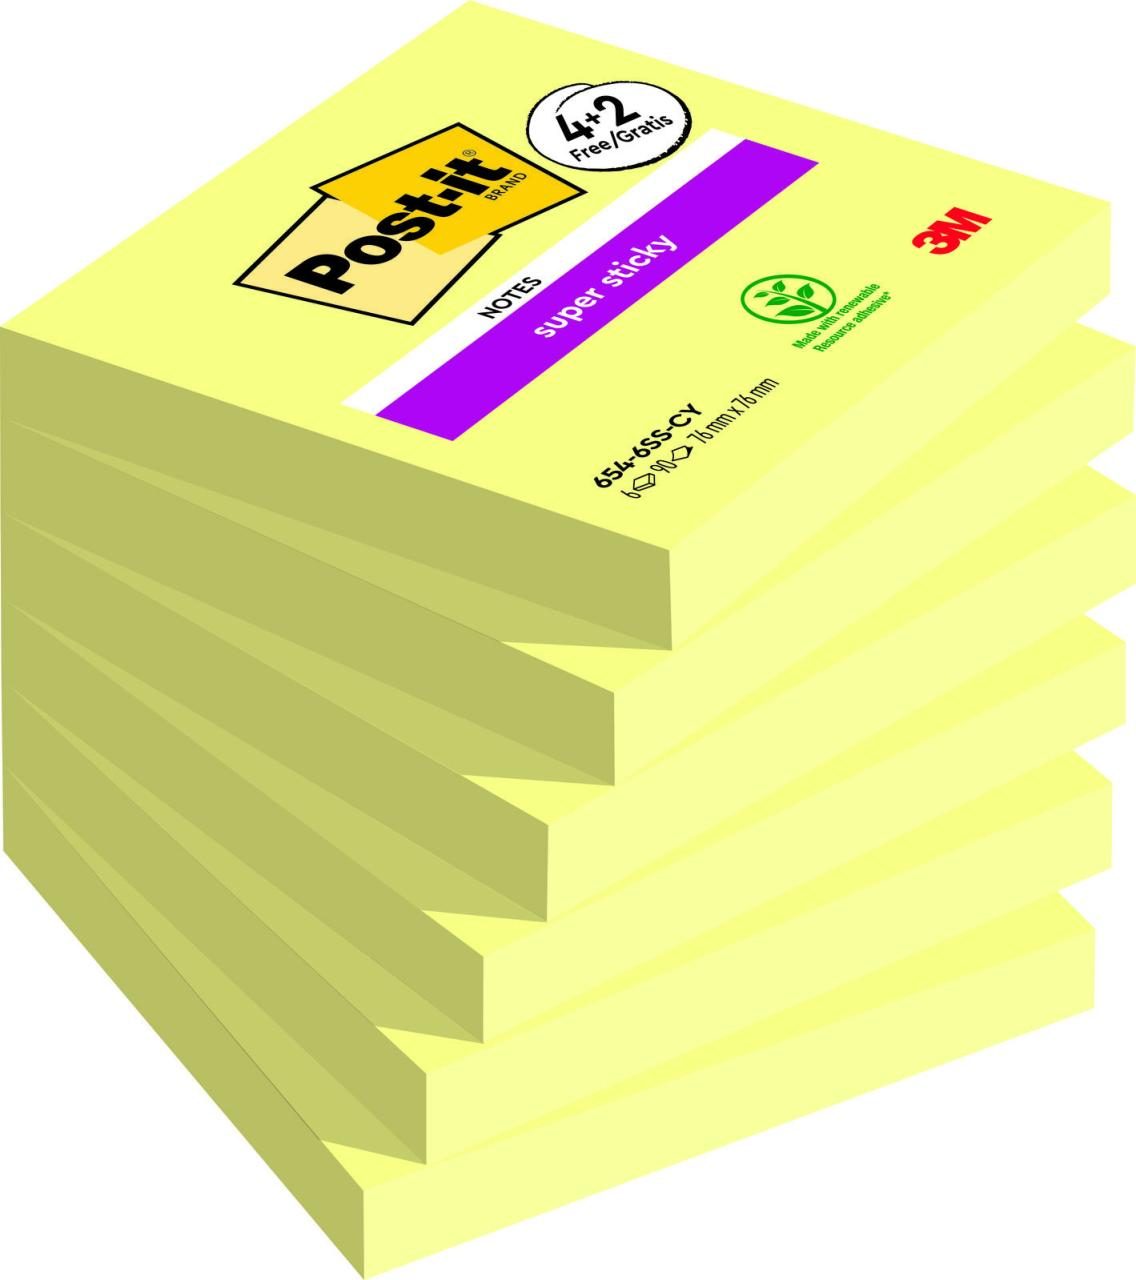 Post-it® Haftnotizen Super Sticky Notes Gelb von Post-it®